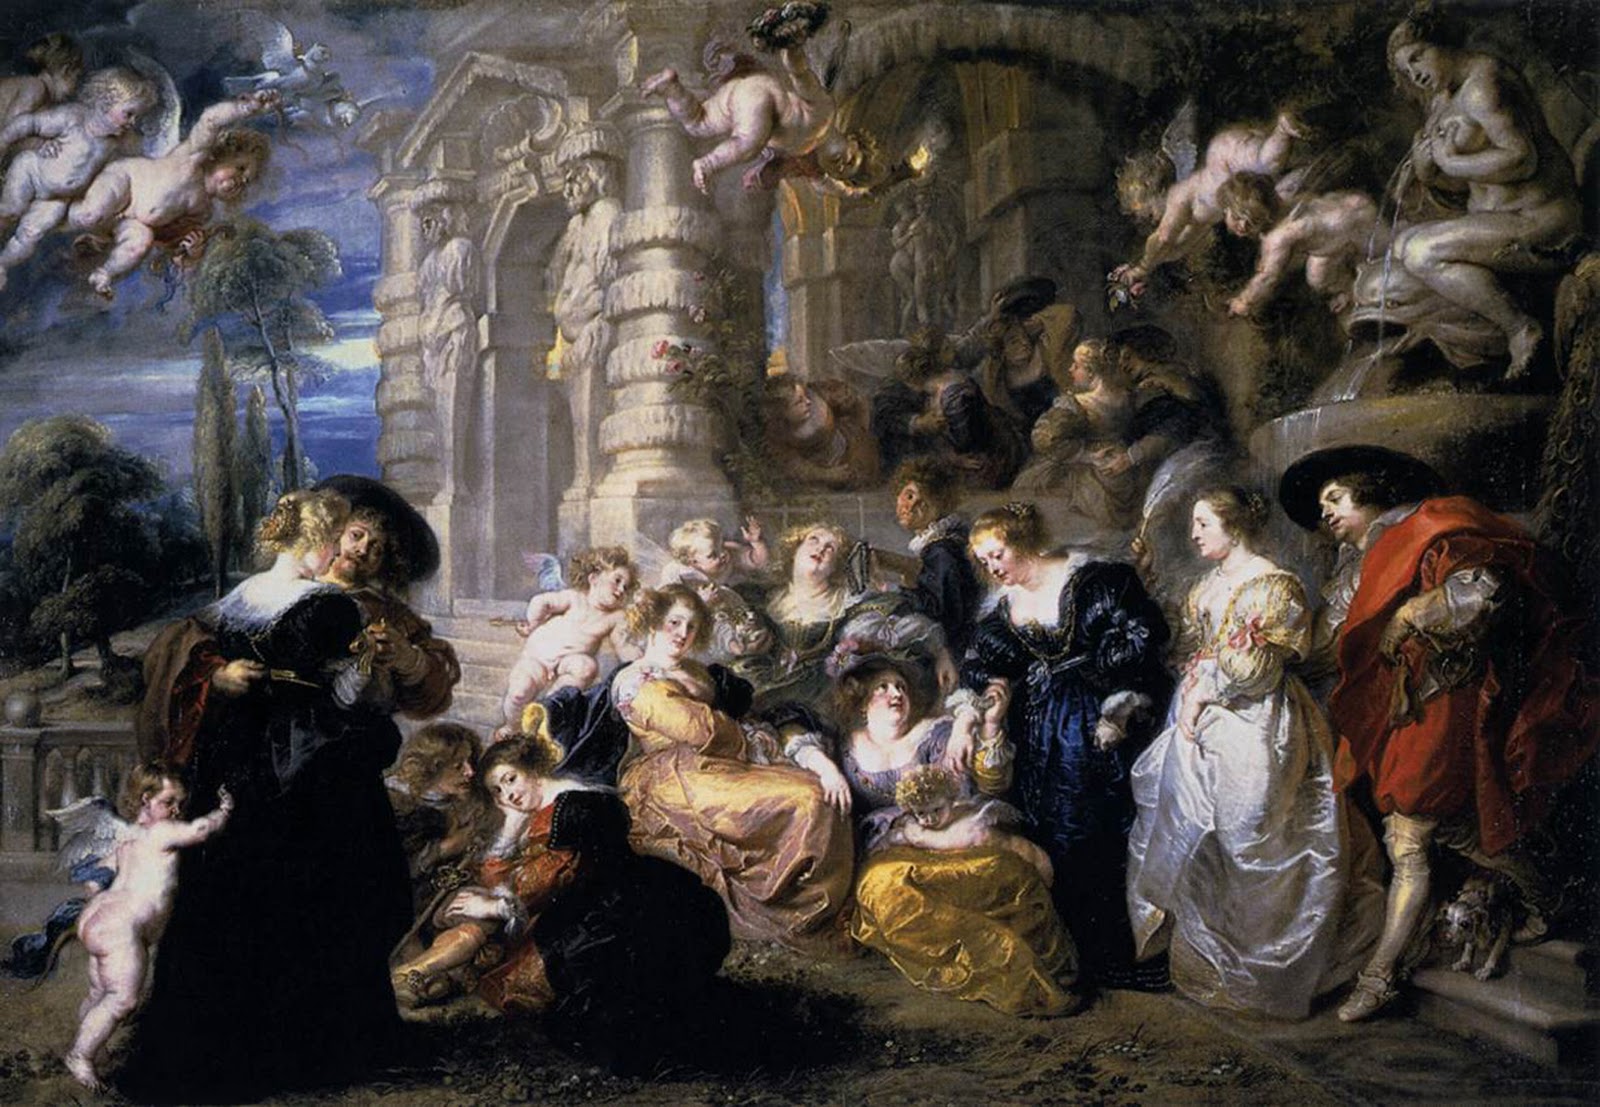 Peter Paul Rubens - The Garden of Love - c.1638